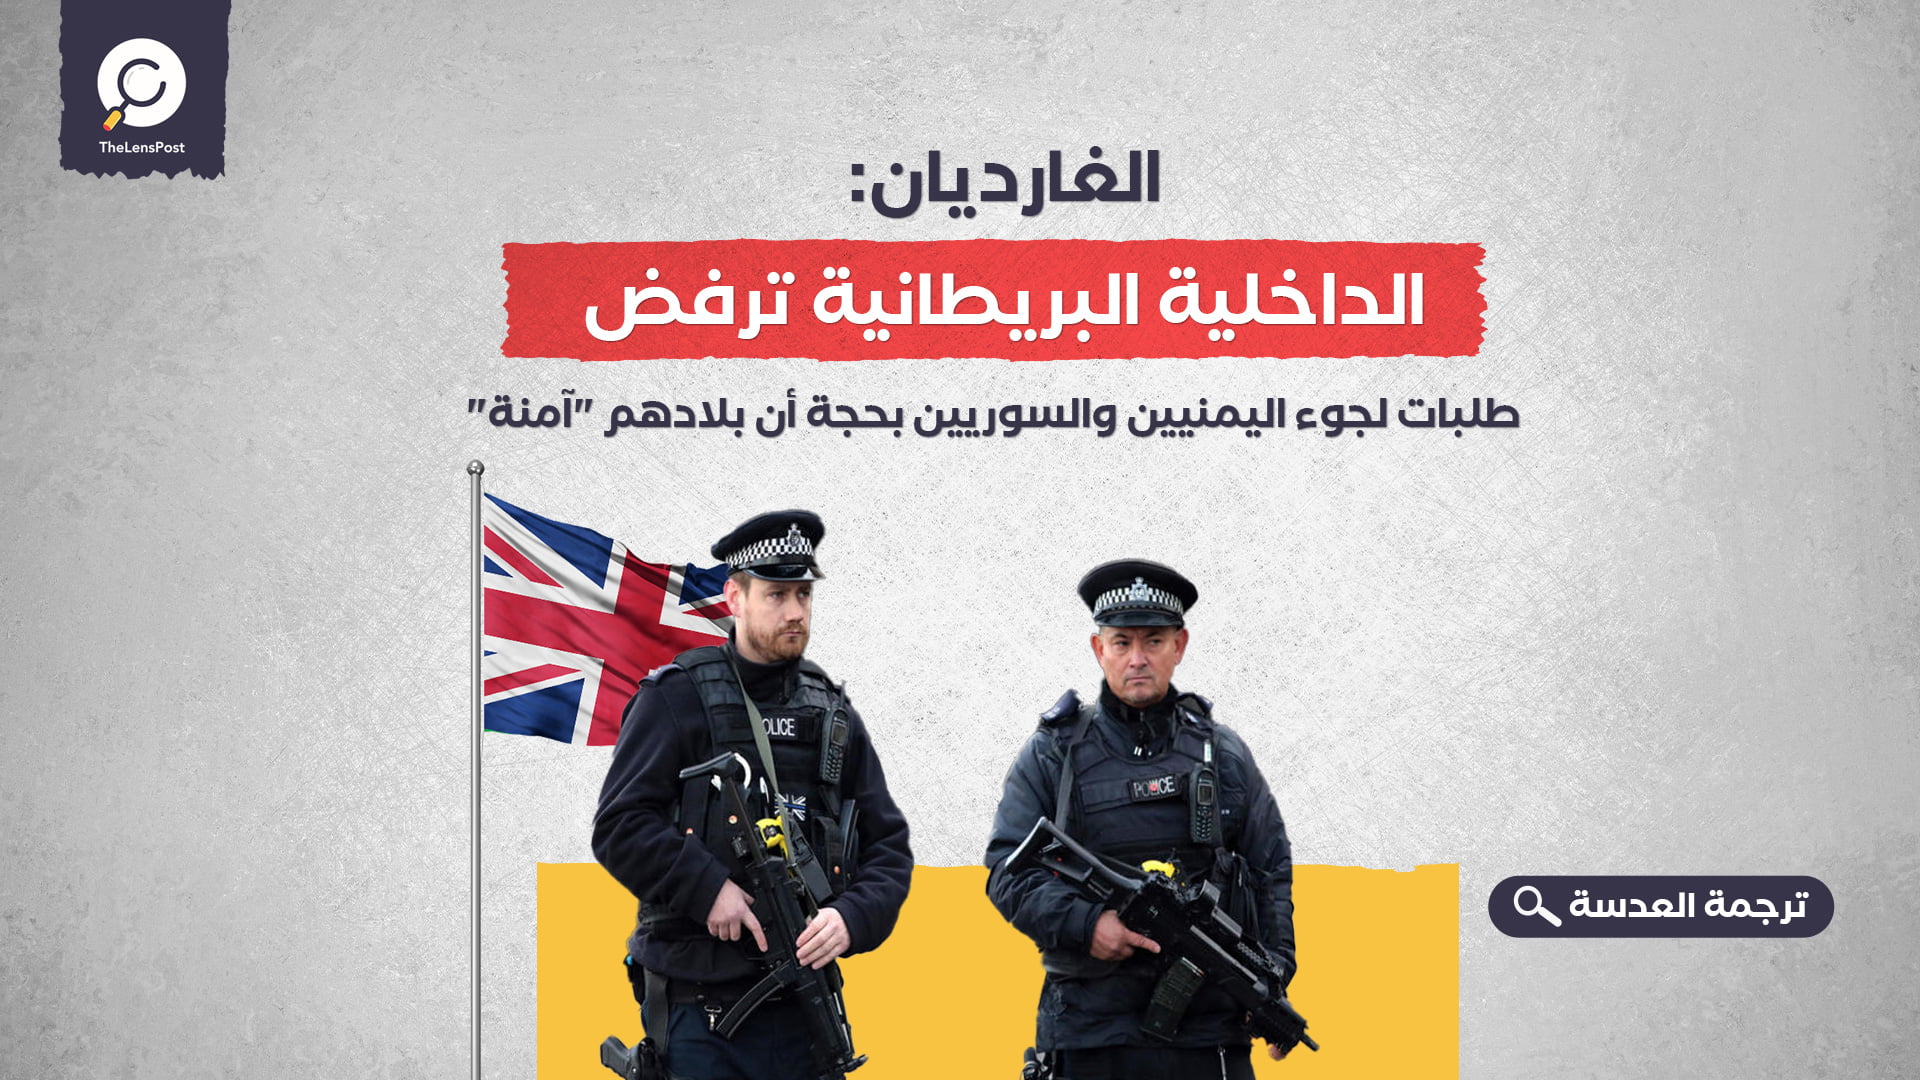 الغارديان: الداخلية البريطانية ترفض طلبات لجوء اليمنيين والسوريين بحجة أن بلادهم "آمنة"